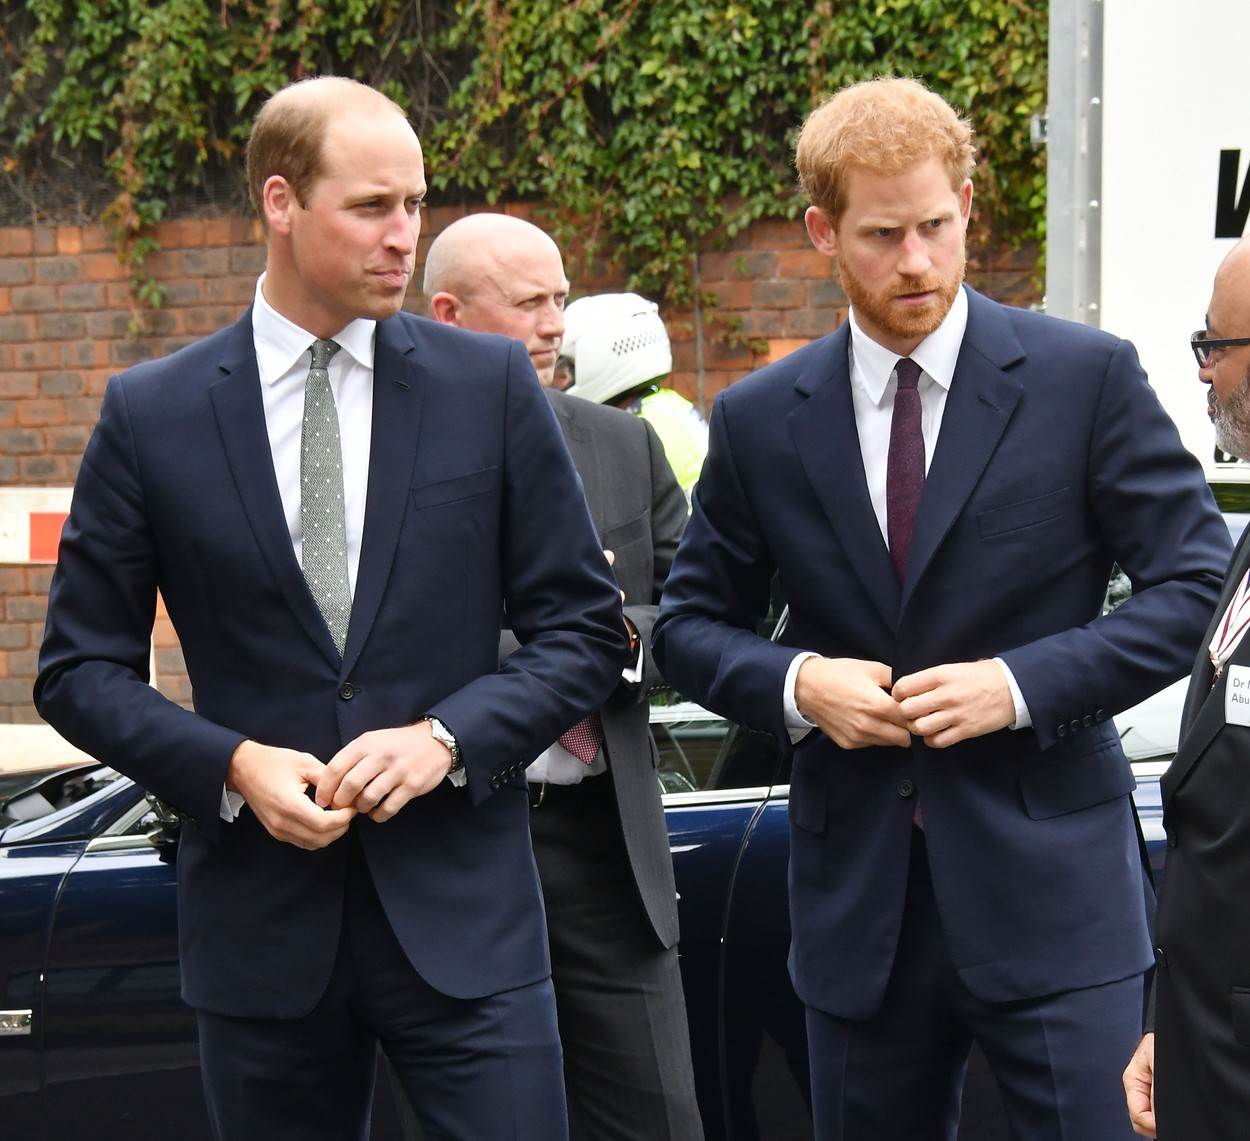 Princa Williama i princa Harryja rijetko viđamo bez odijela ili smokinga